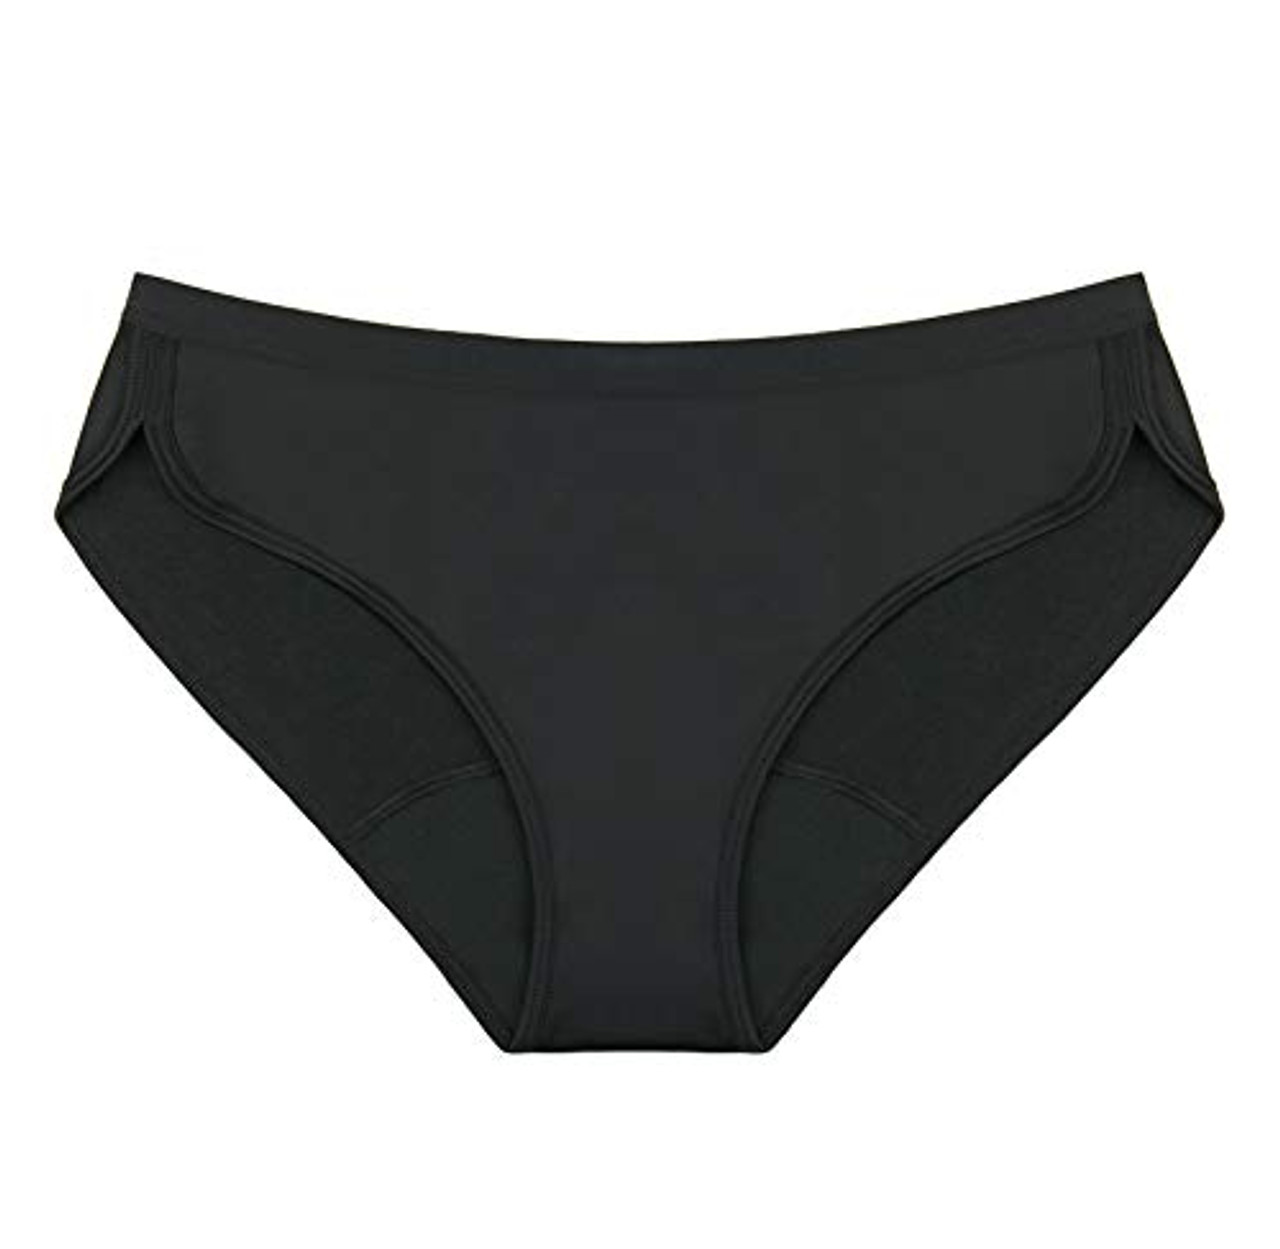 Thinx Sport Period Underwear | Menstrual Underwear for Women (Black, M)